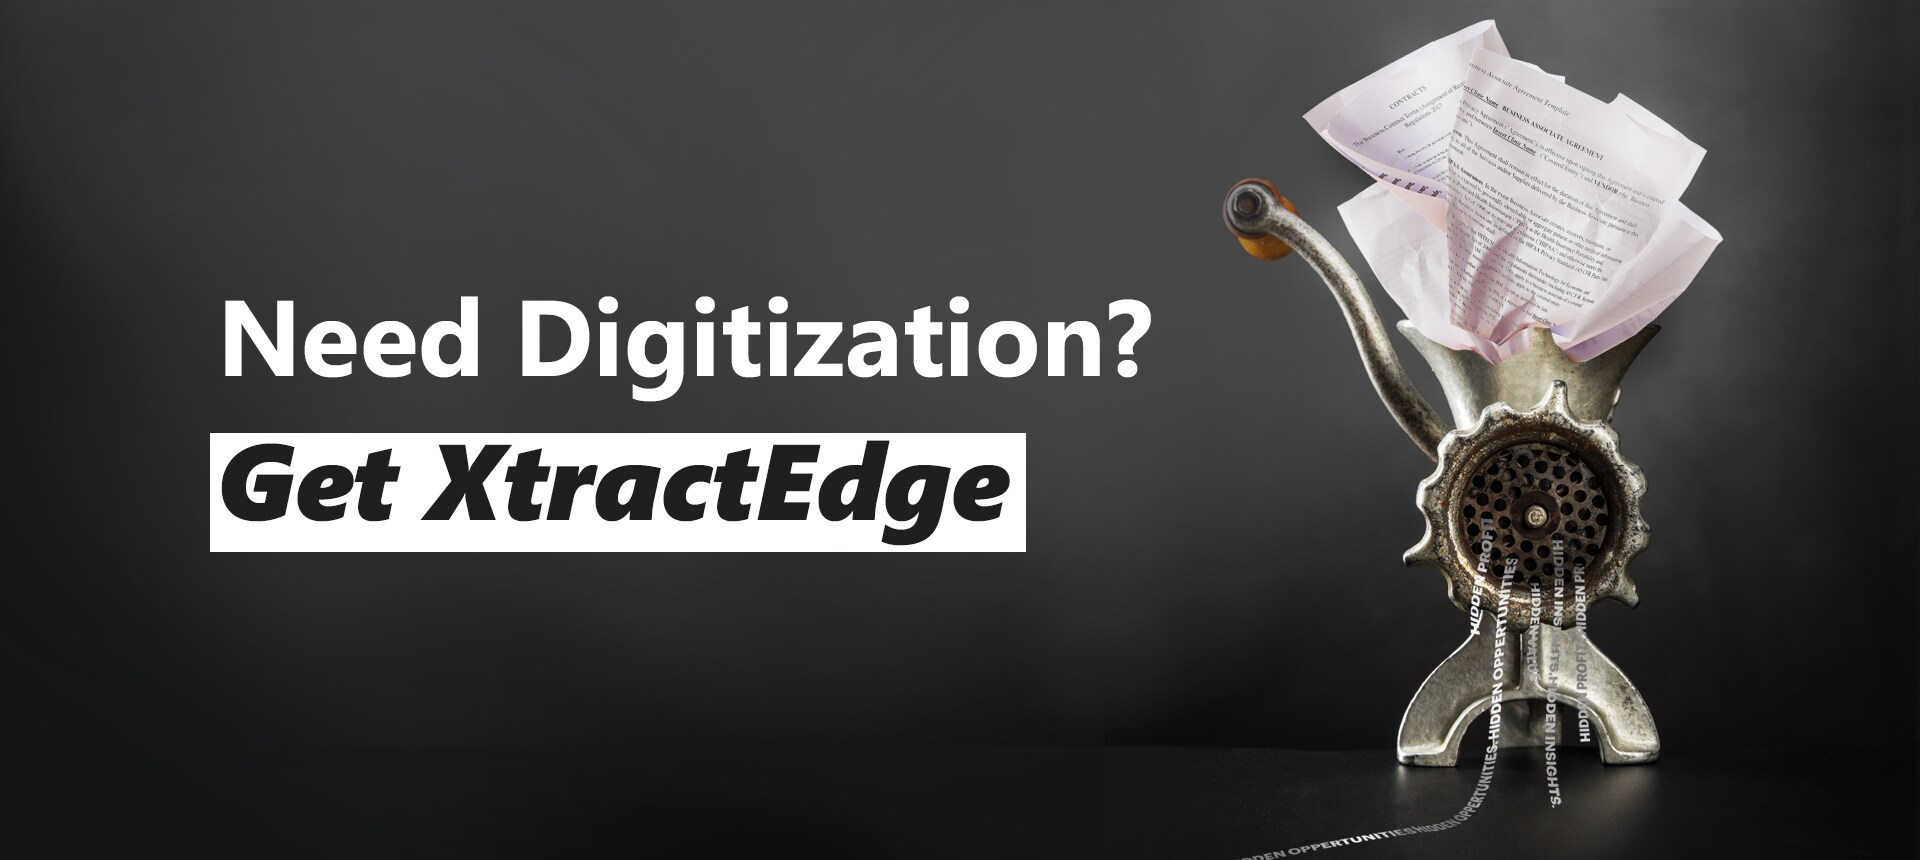 digitization-banner